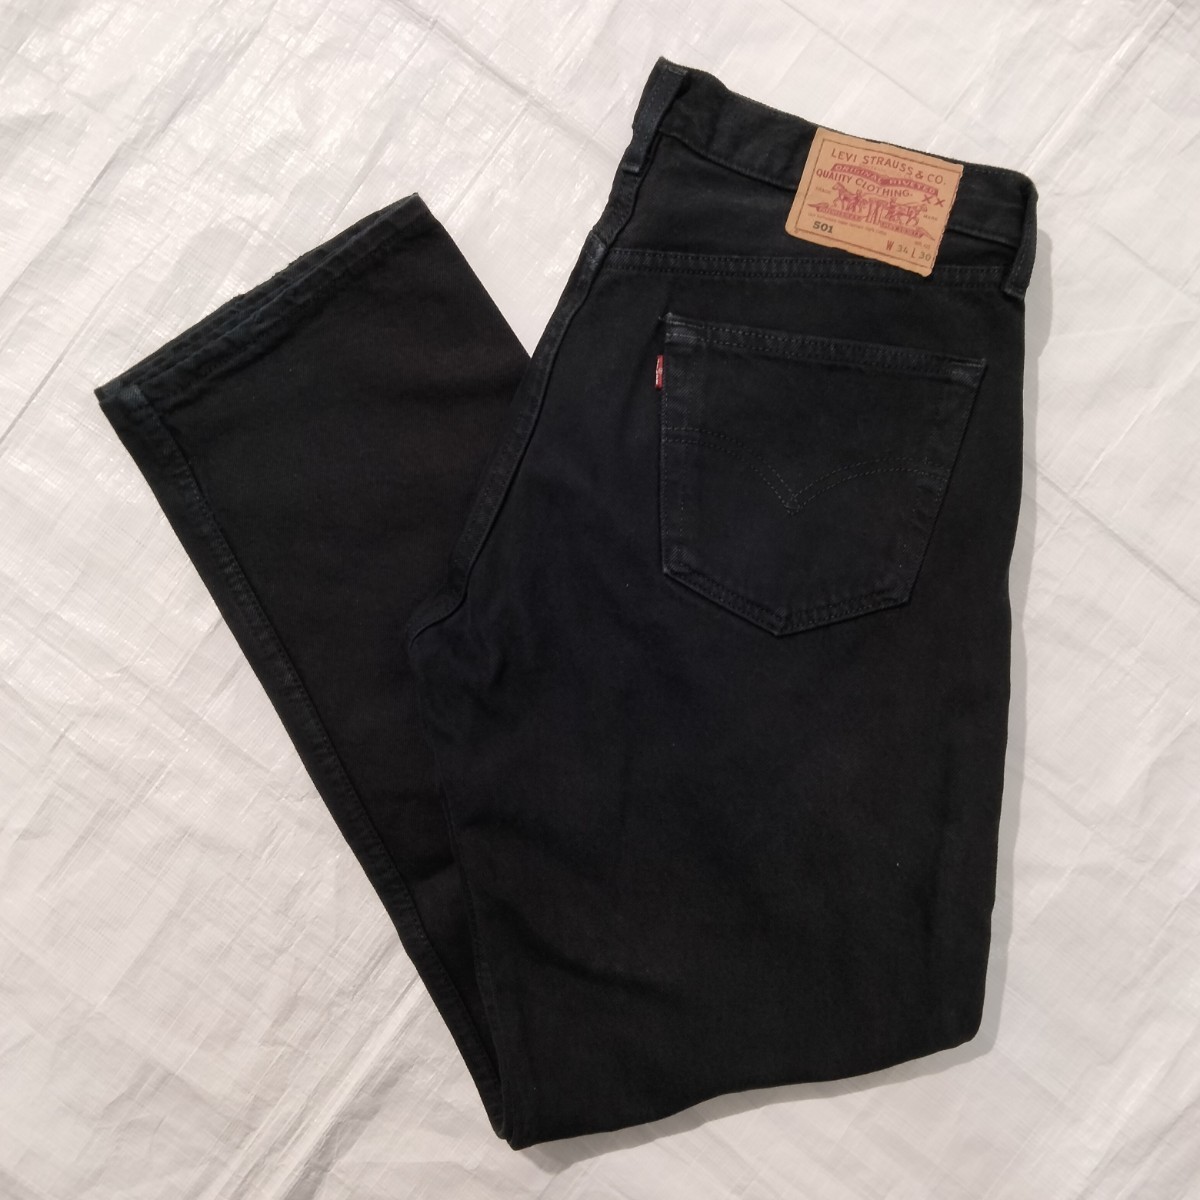 リーバイス 501 0165 Levi's black denim jeans ブラック デニム ジーンズ UK 英国製 34x30 スーパーブラック ジェットブラック 後染 黒 の画像1